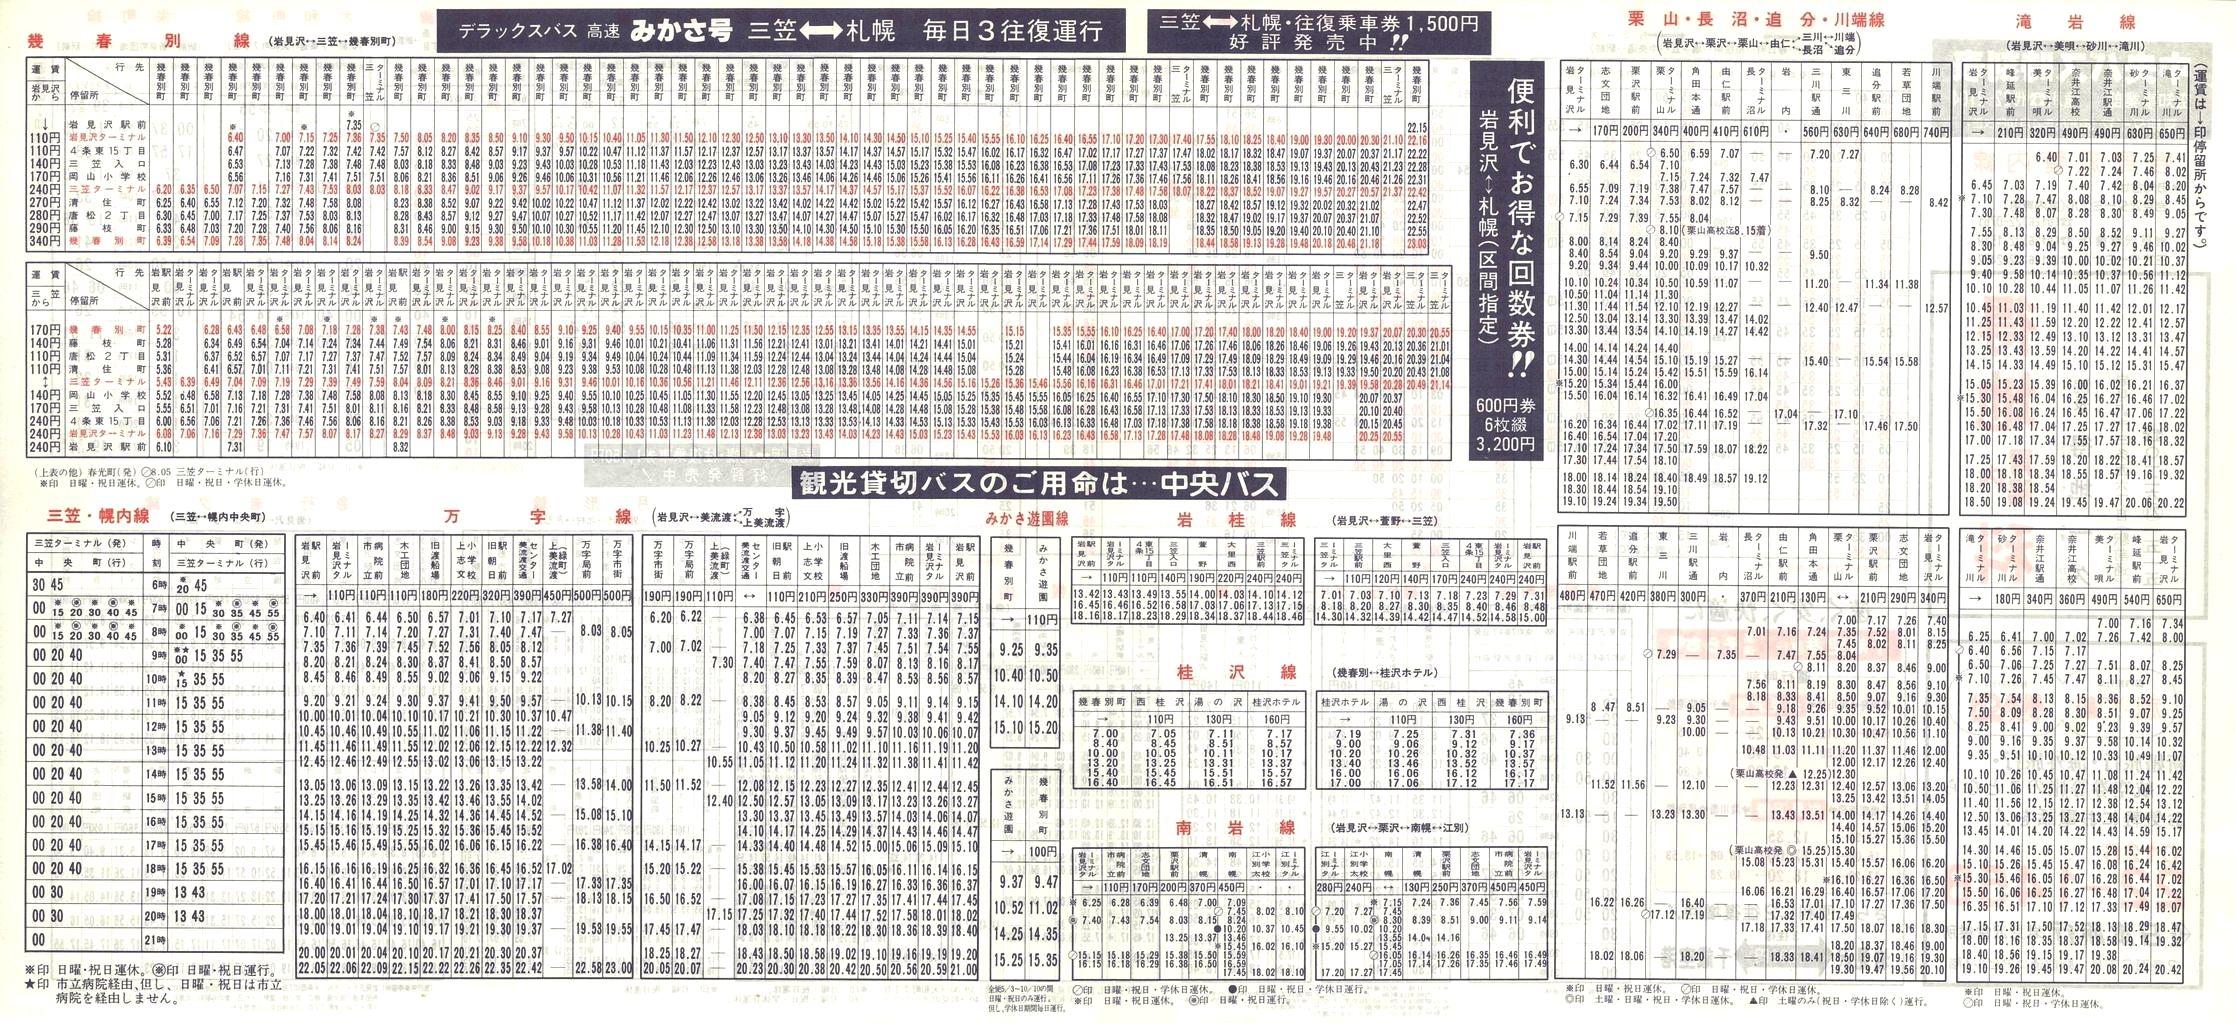 1988-04-10改正_北海道中央バス(空知)_岩見沢管内線時刻表裏面